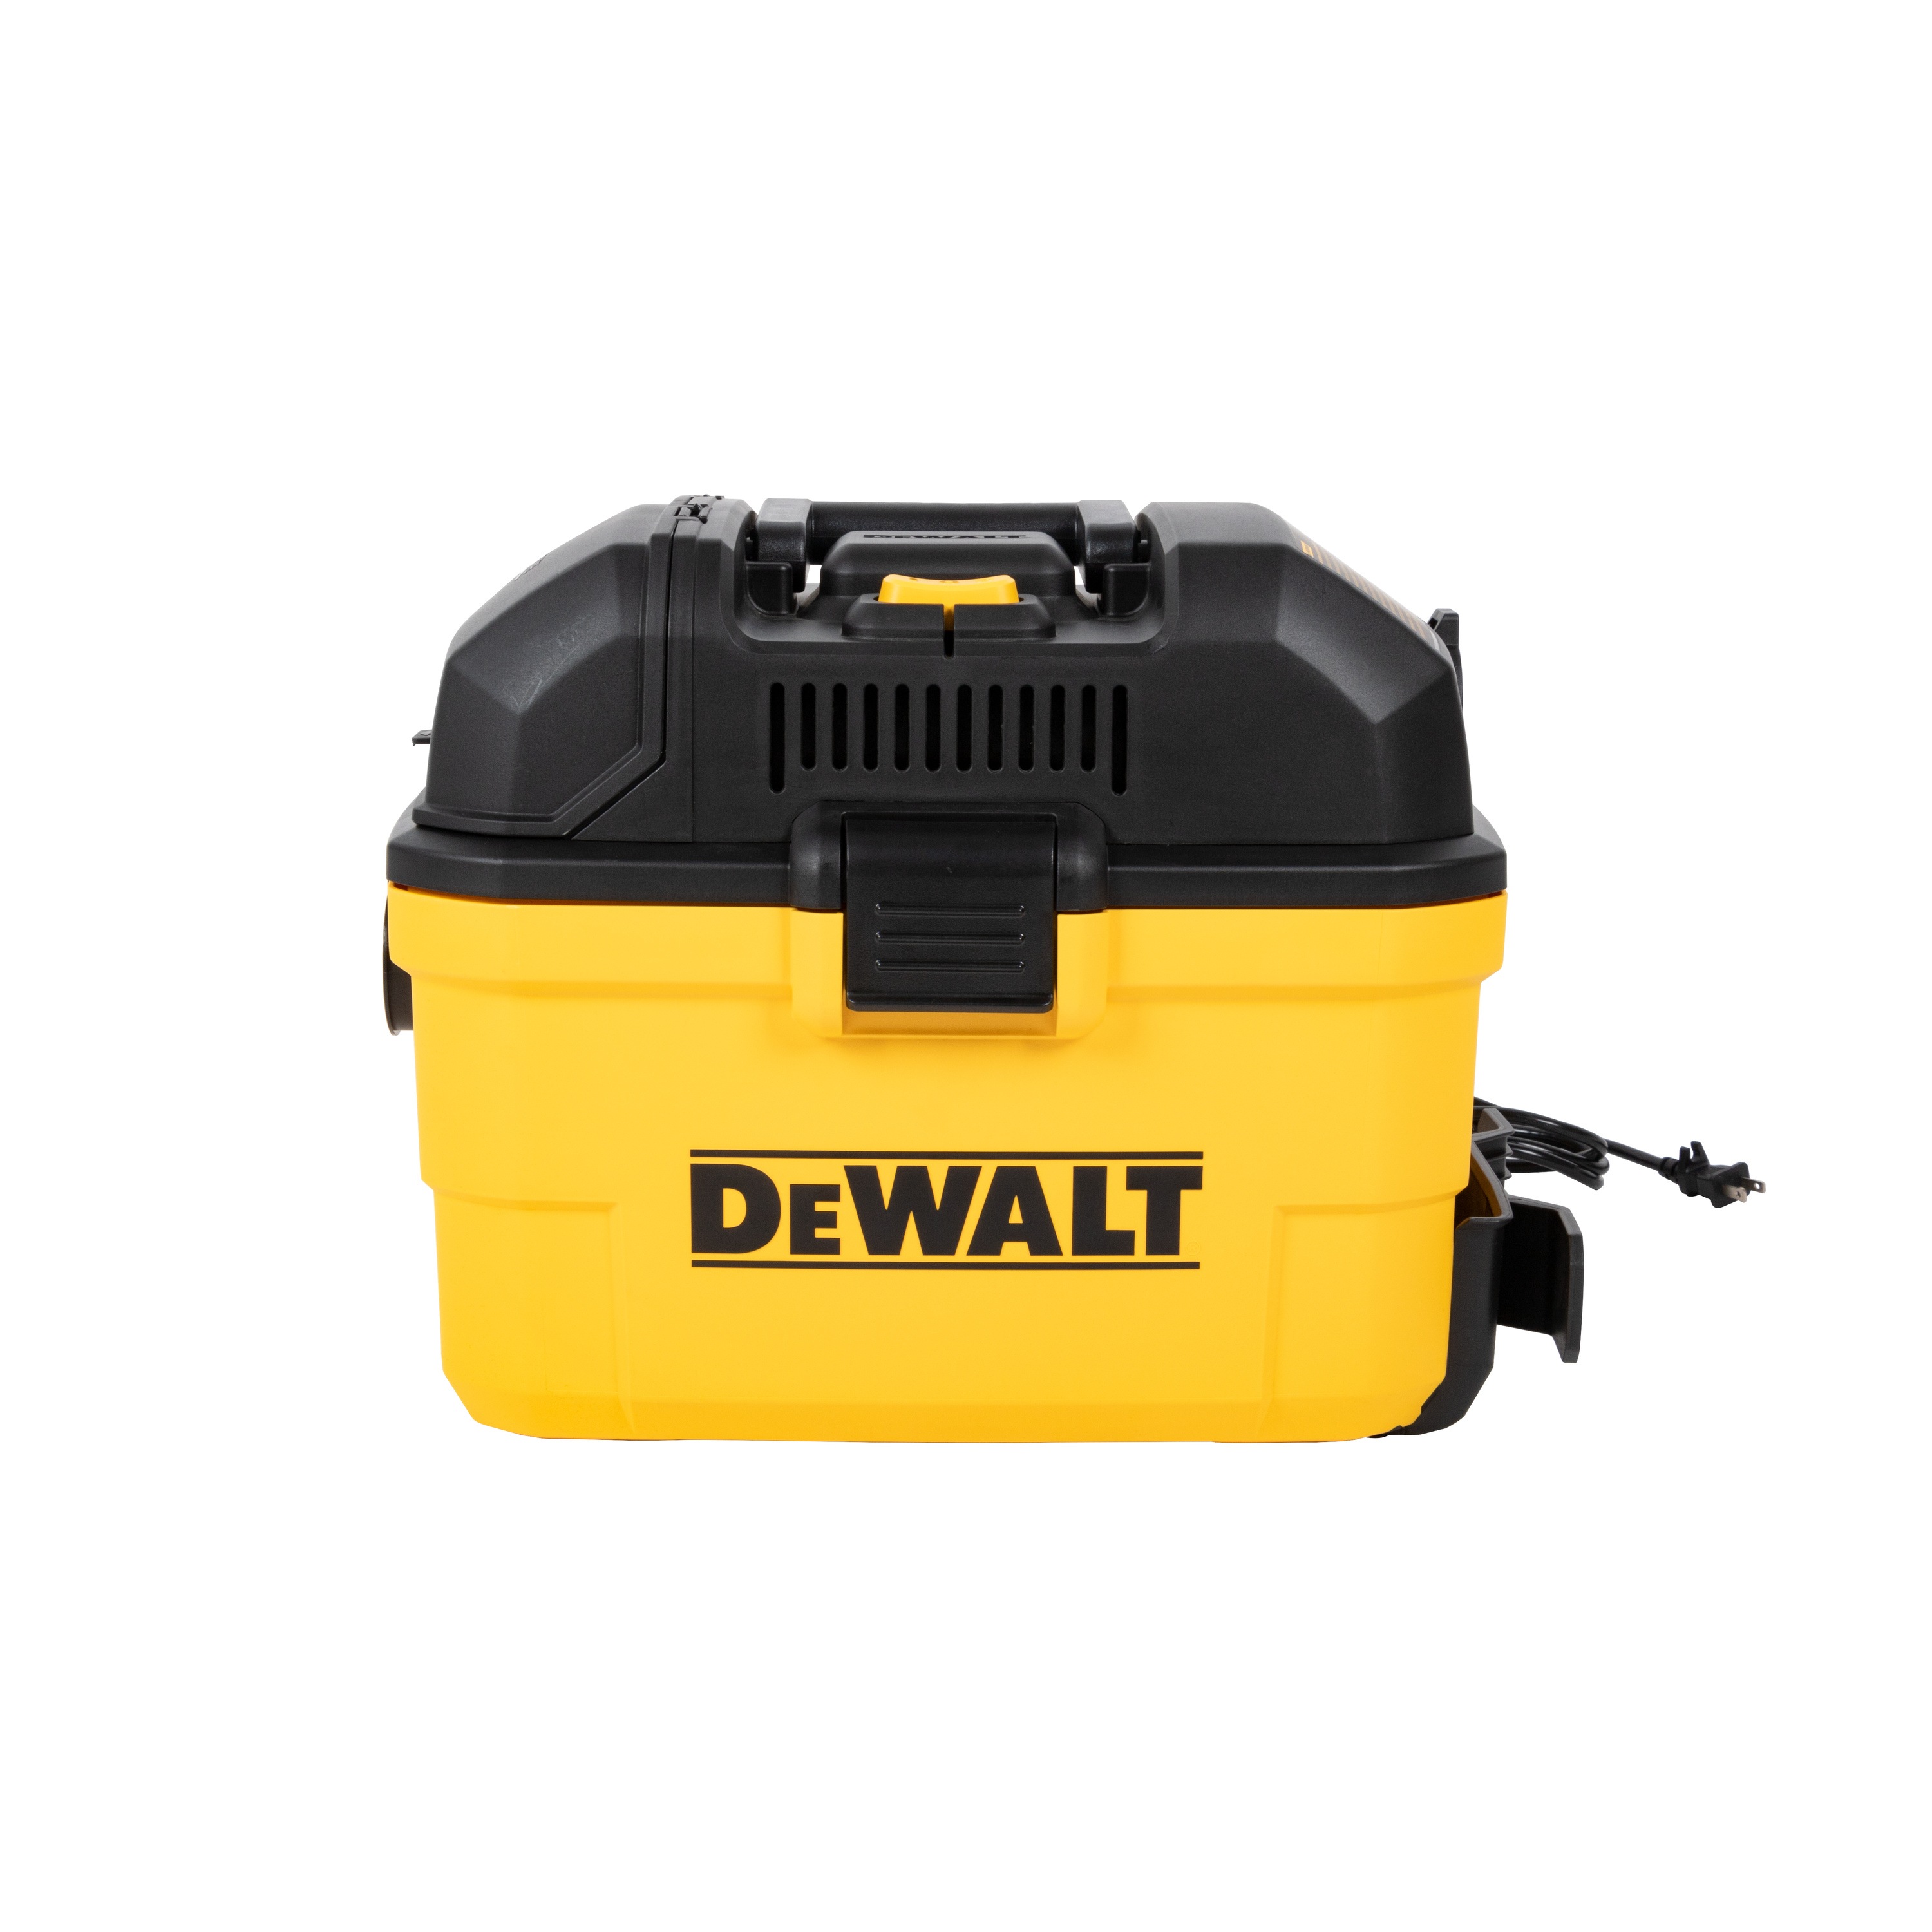 DEWALT - 6 gal WallMounted WetDry Vacuum with Wireless OnOff Control - DXV06G